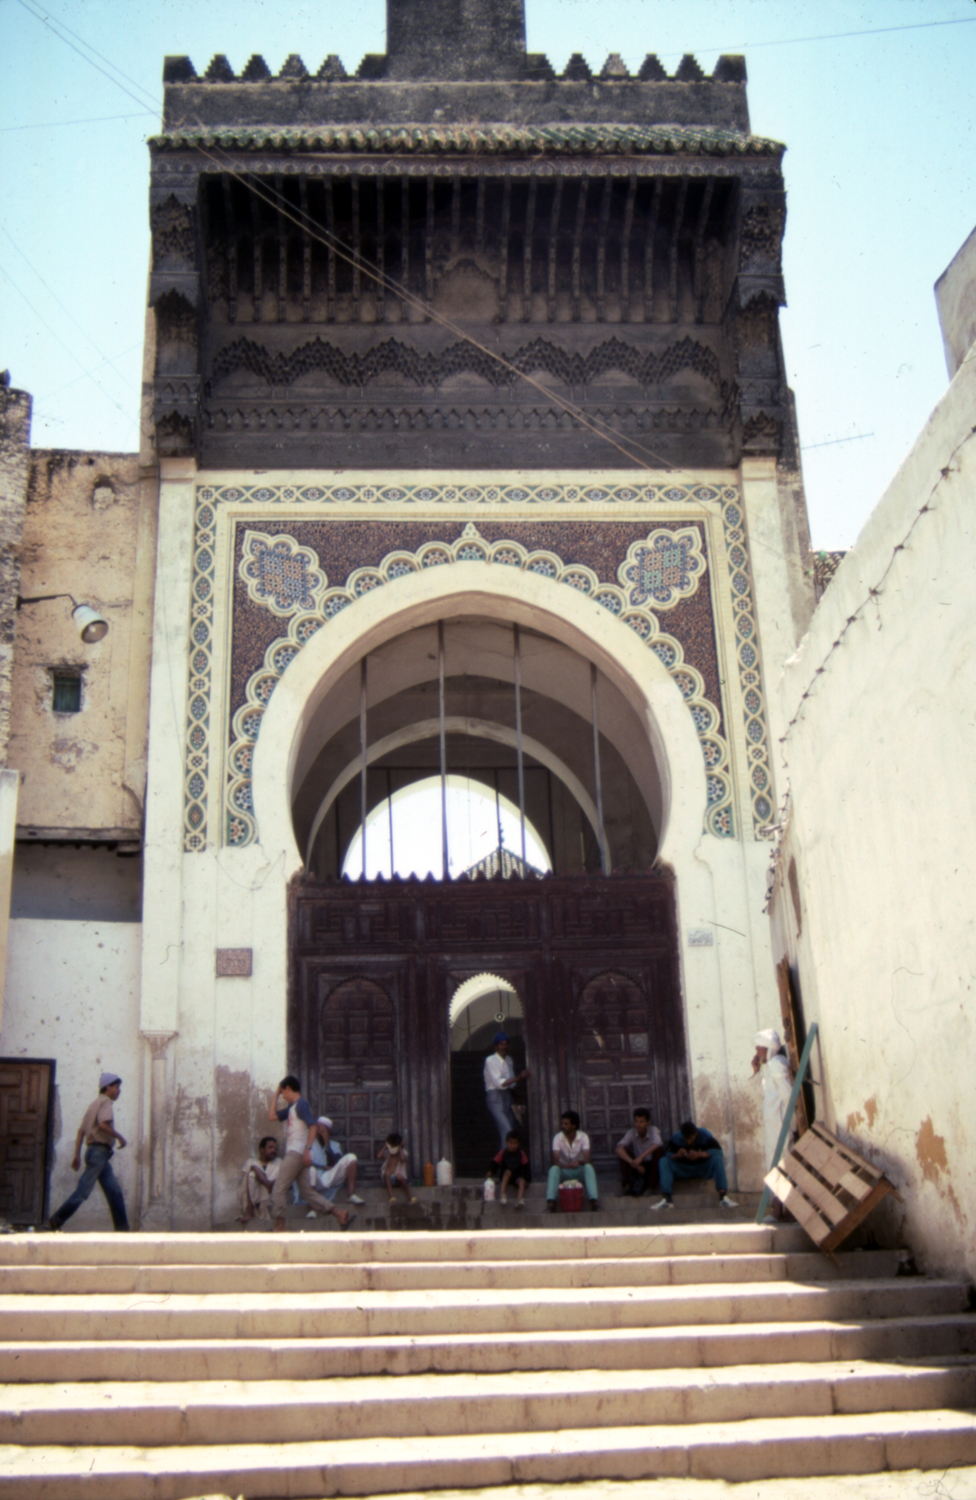 Jami' al-Andalusiyyin